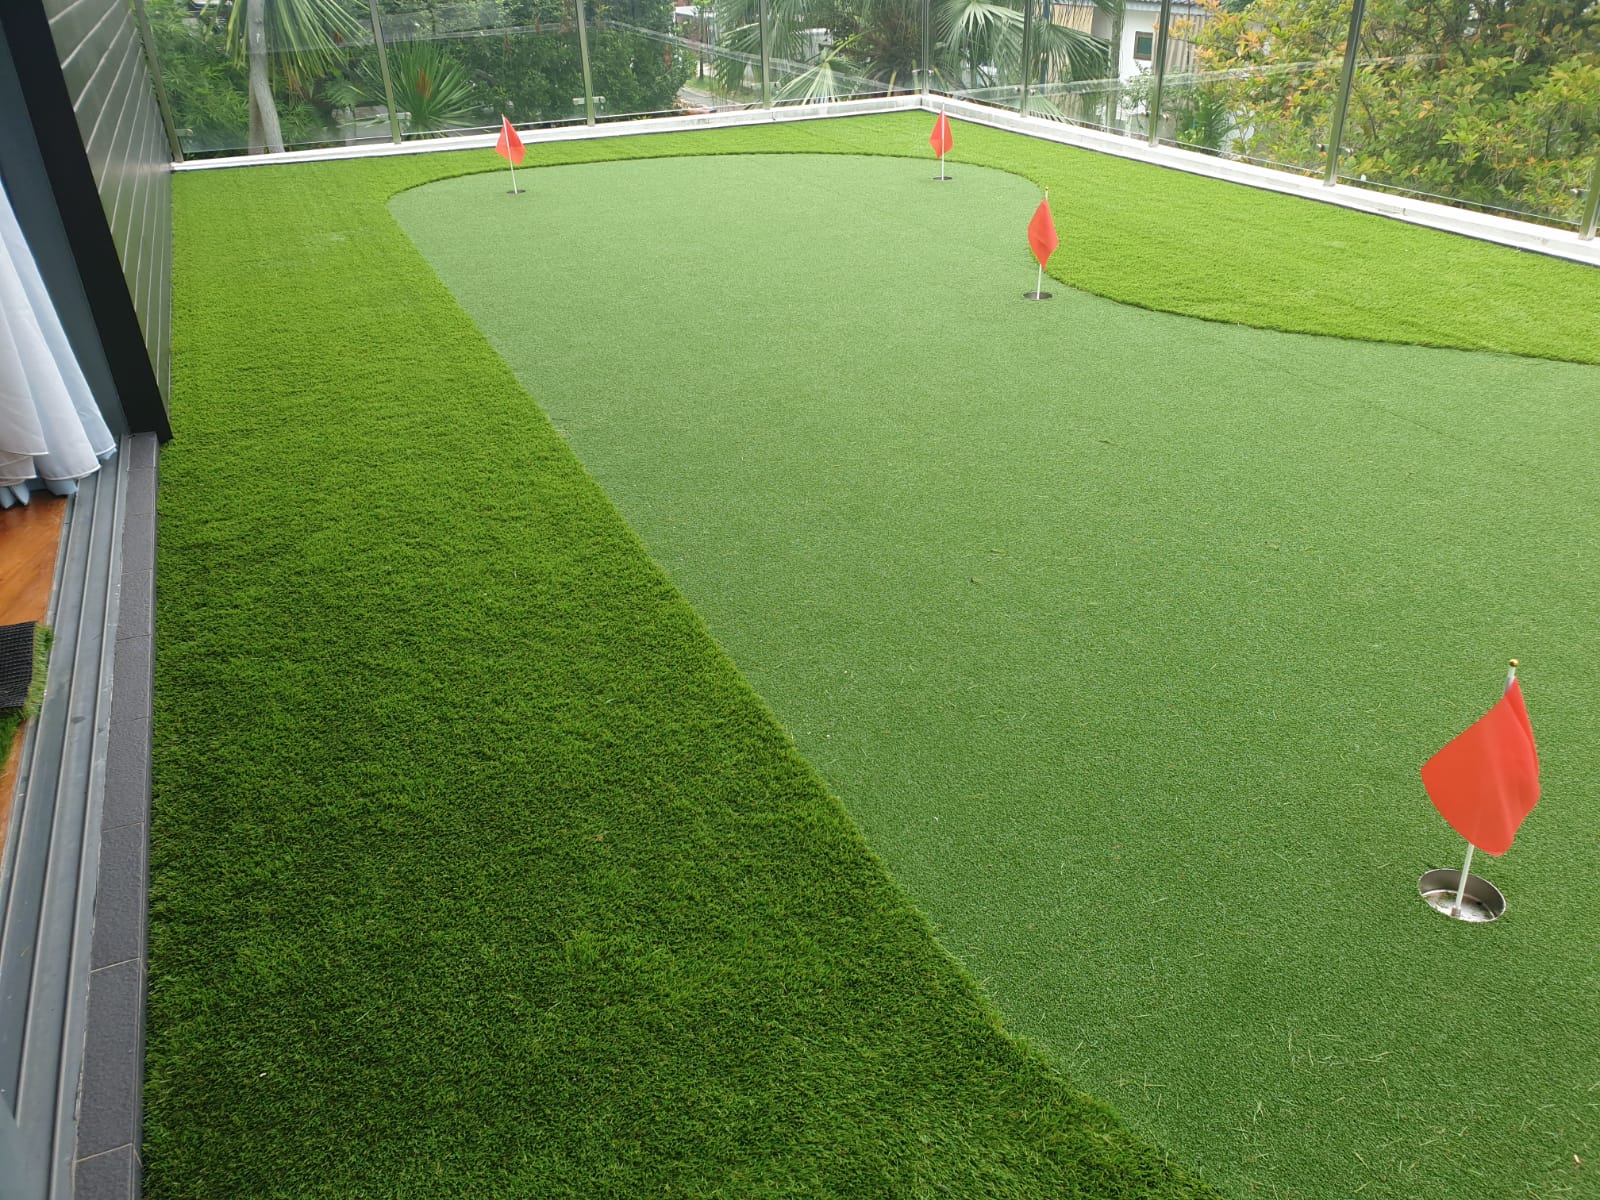 Golf Green Grass carpet - Golf Green carpet, putting green, golf